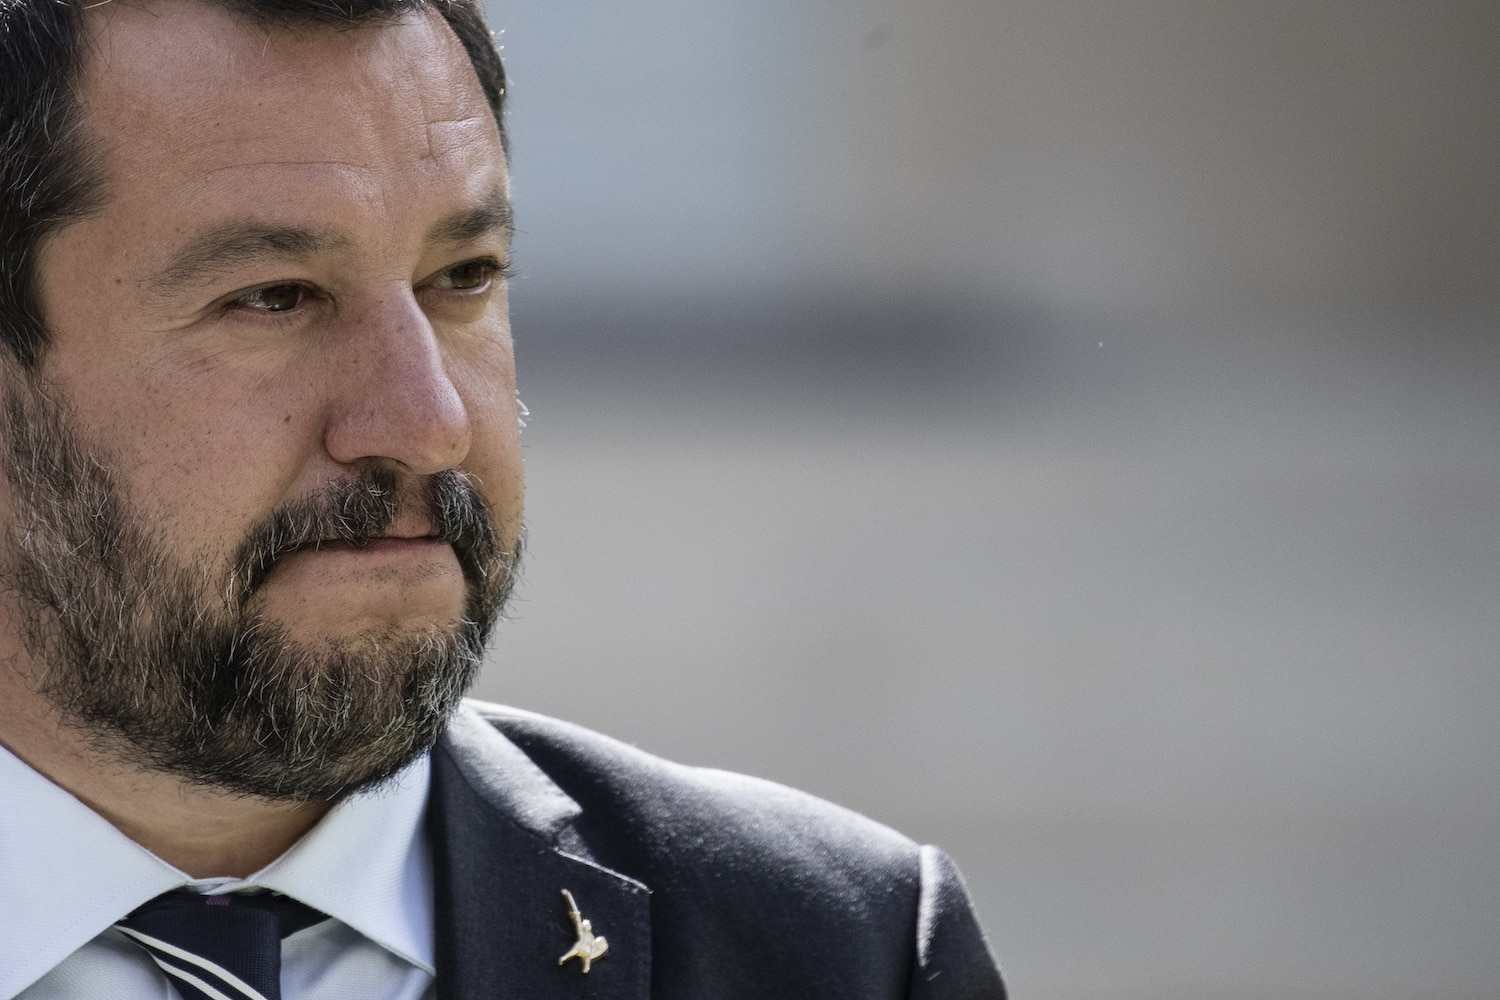 Matteo Salvini attacca Conte e Di Maio “Al governo chi è incapace abbia l’onestà di farsi da parte”